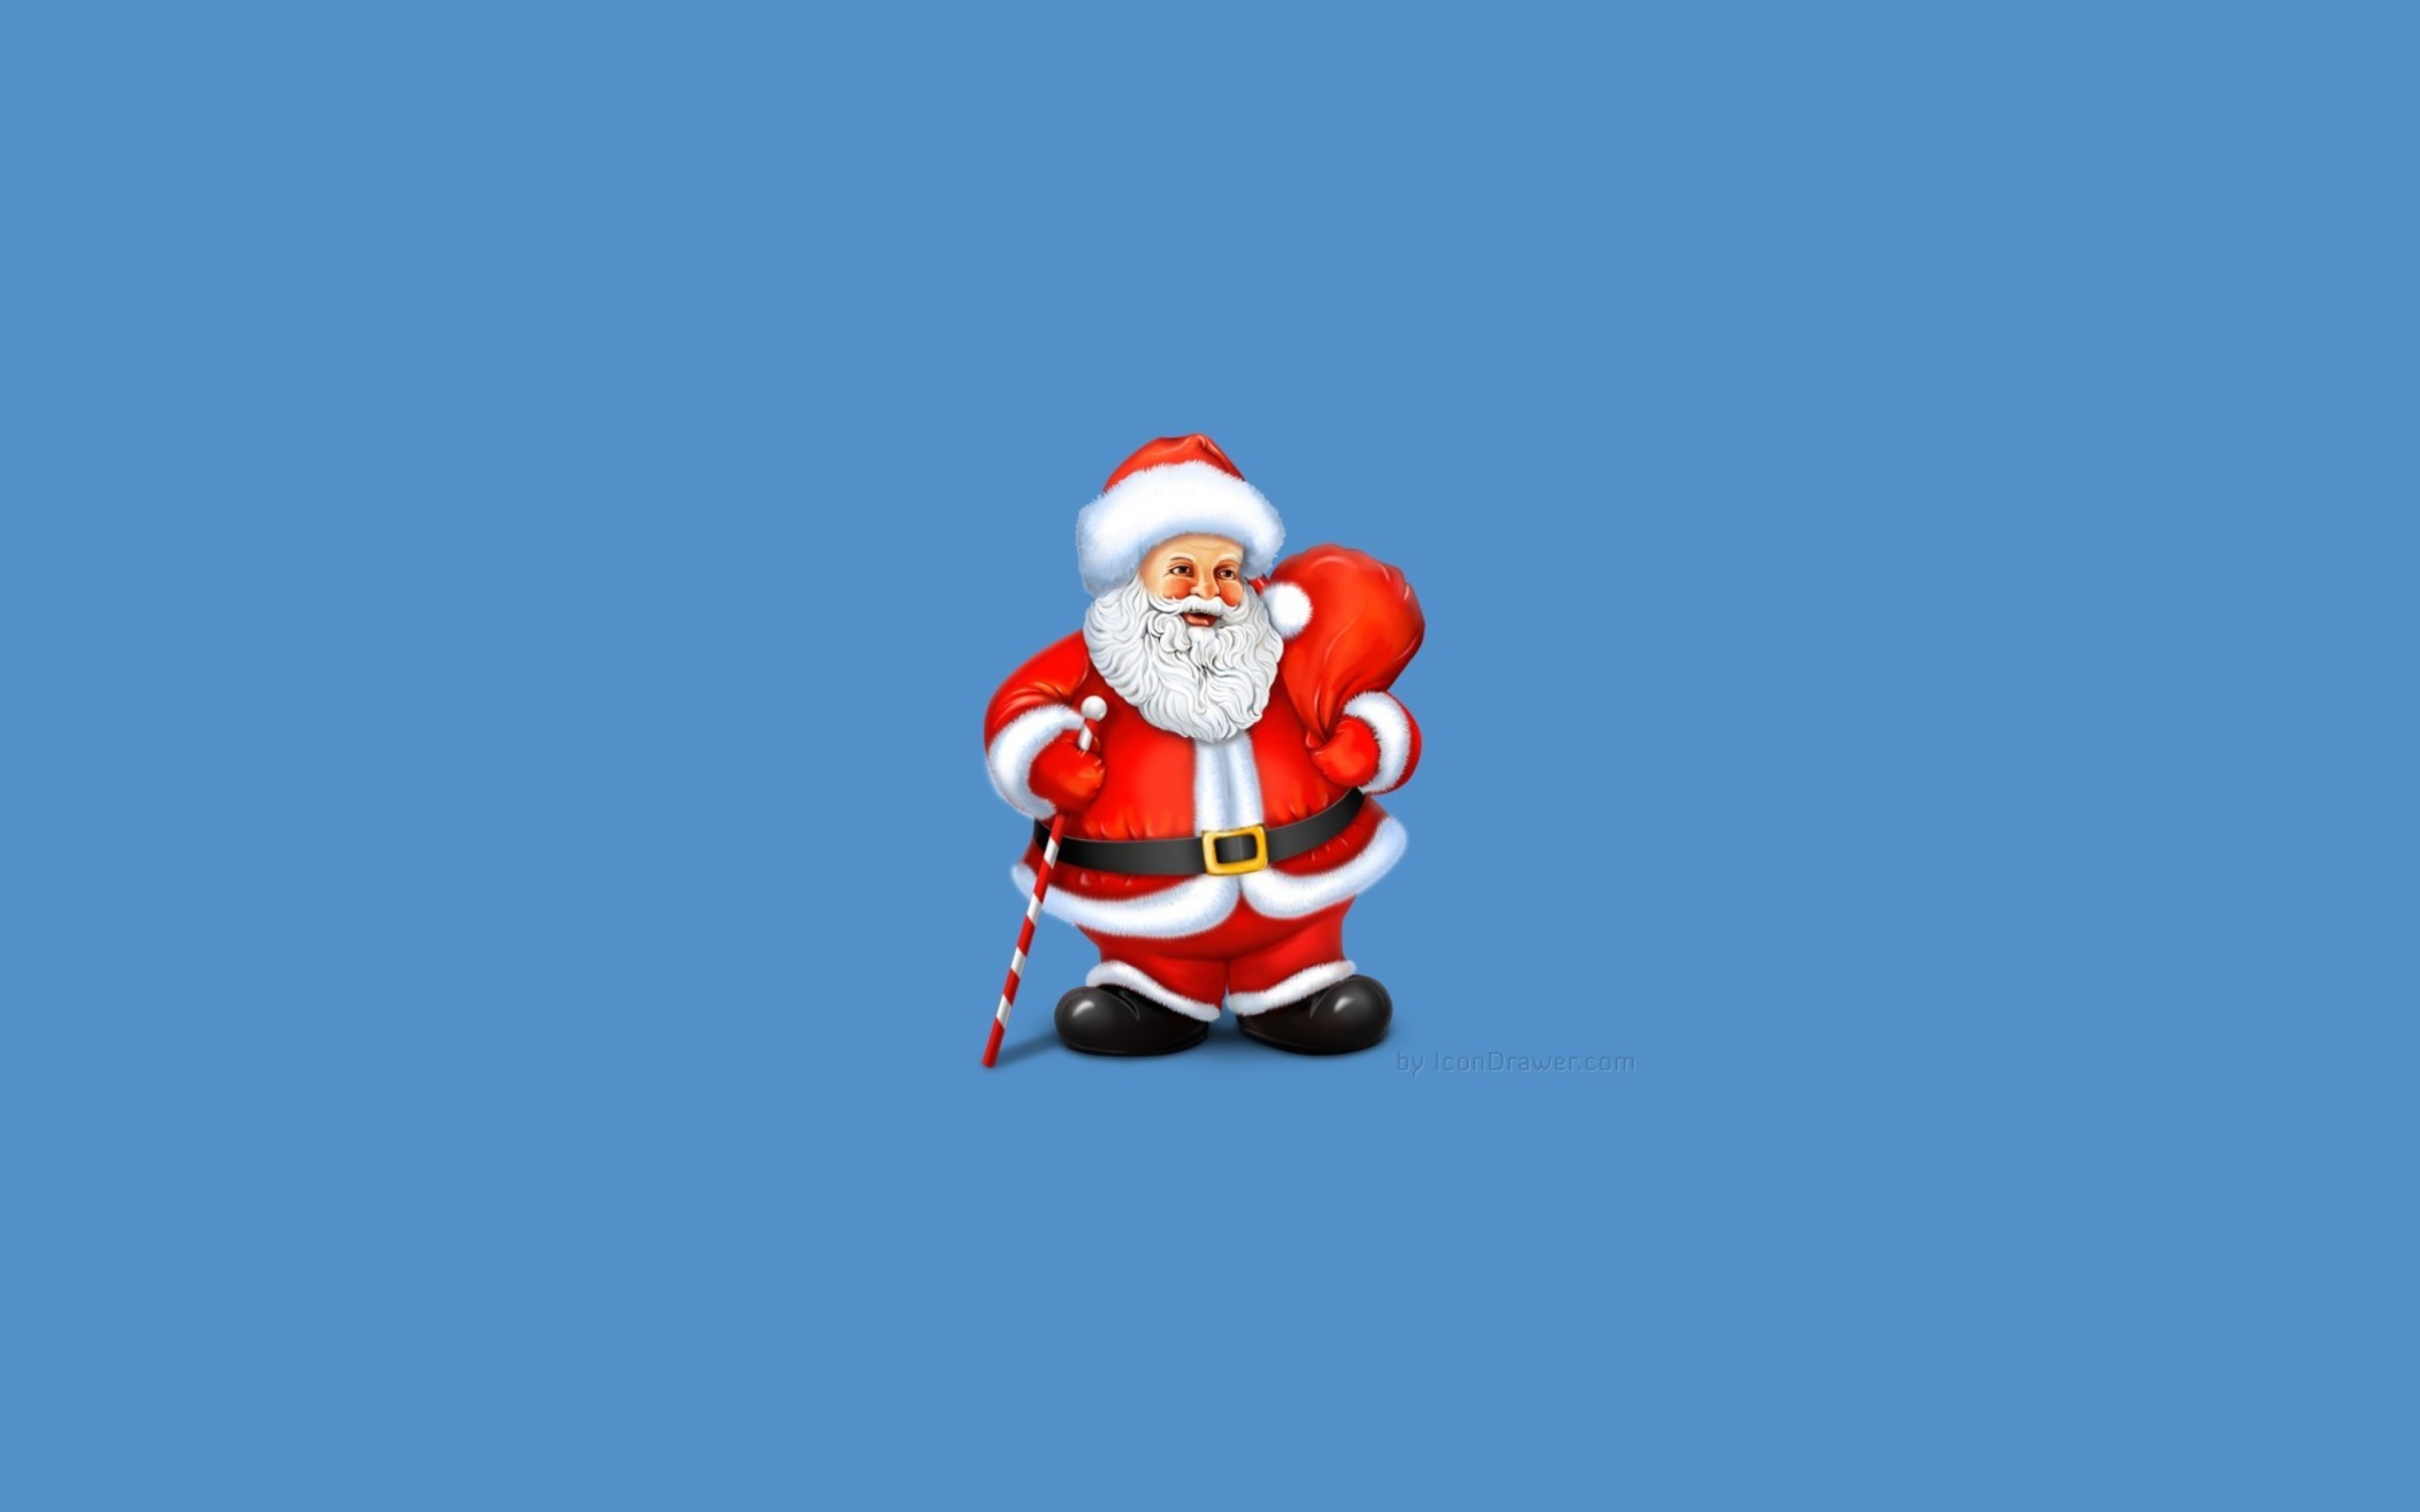 Santa Claus Illustration wallpaper 2560x1600